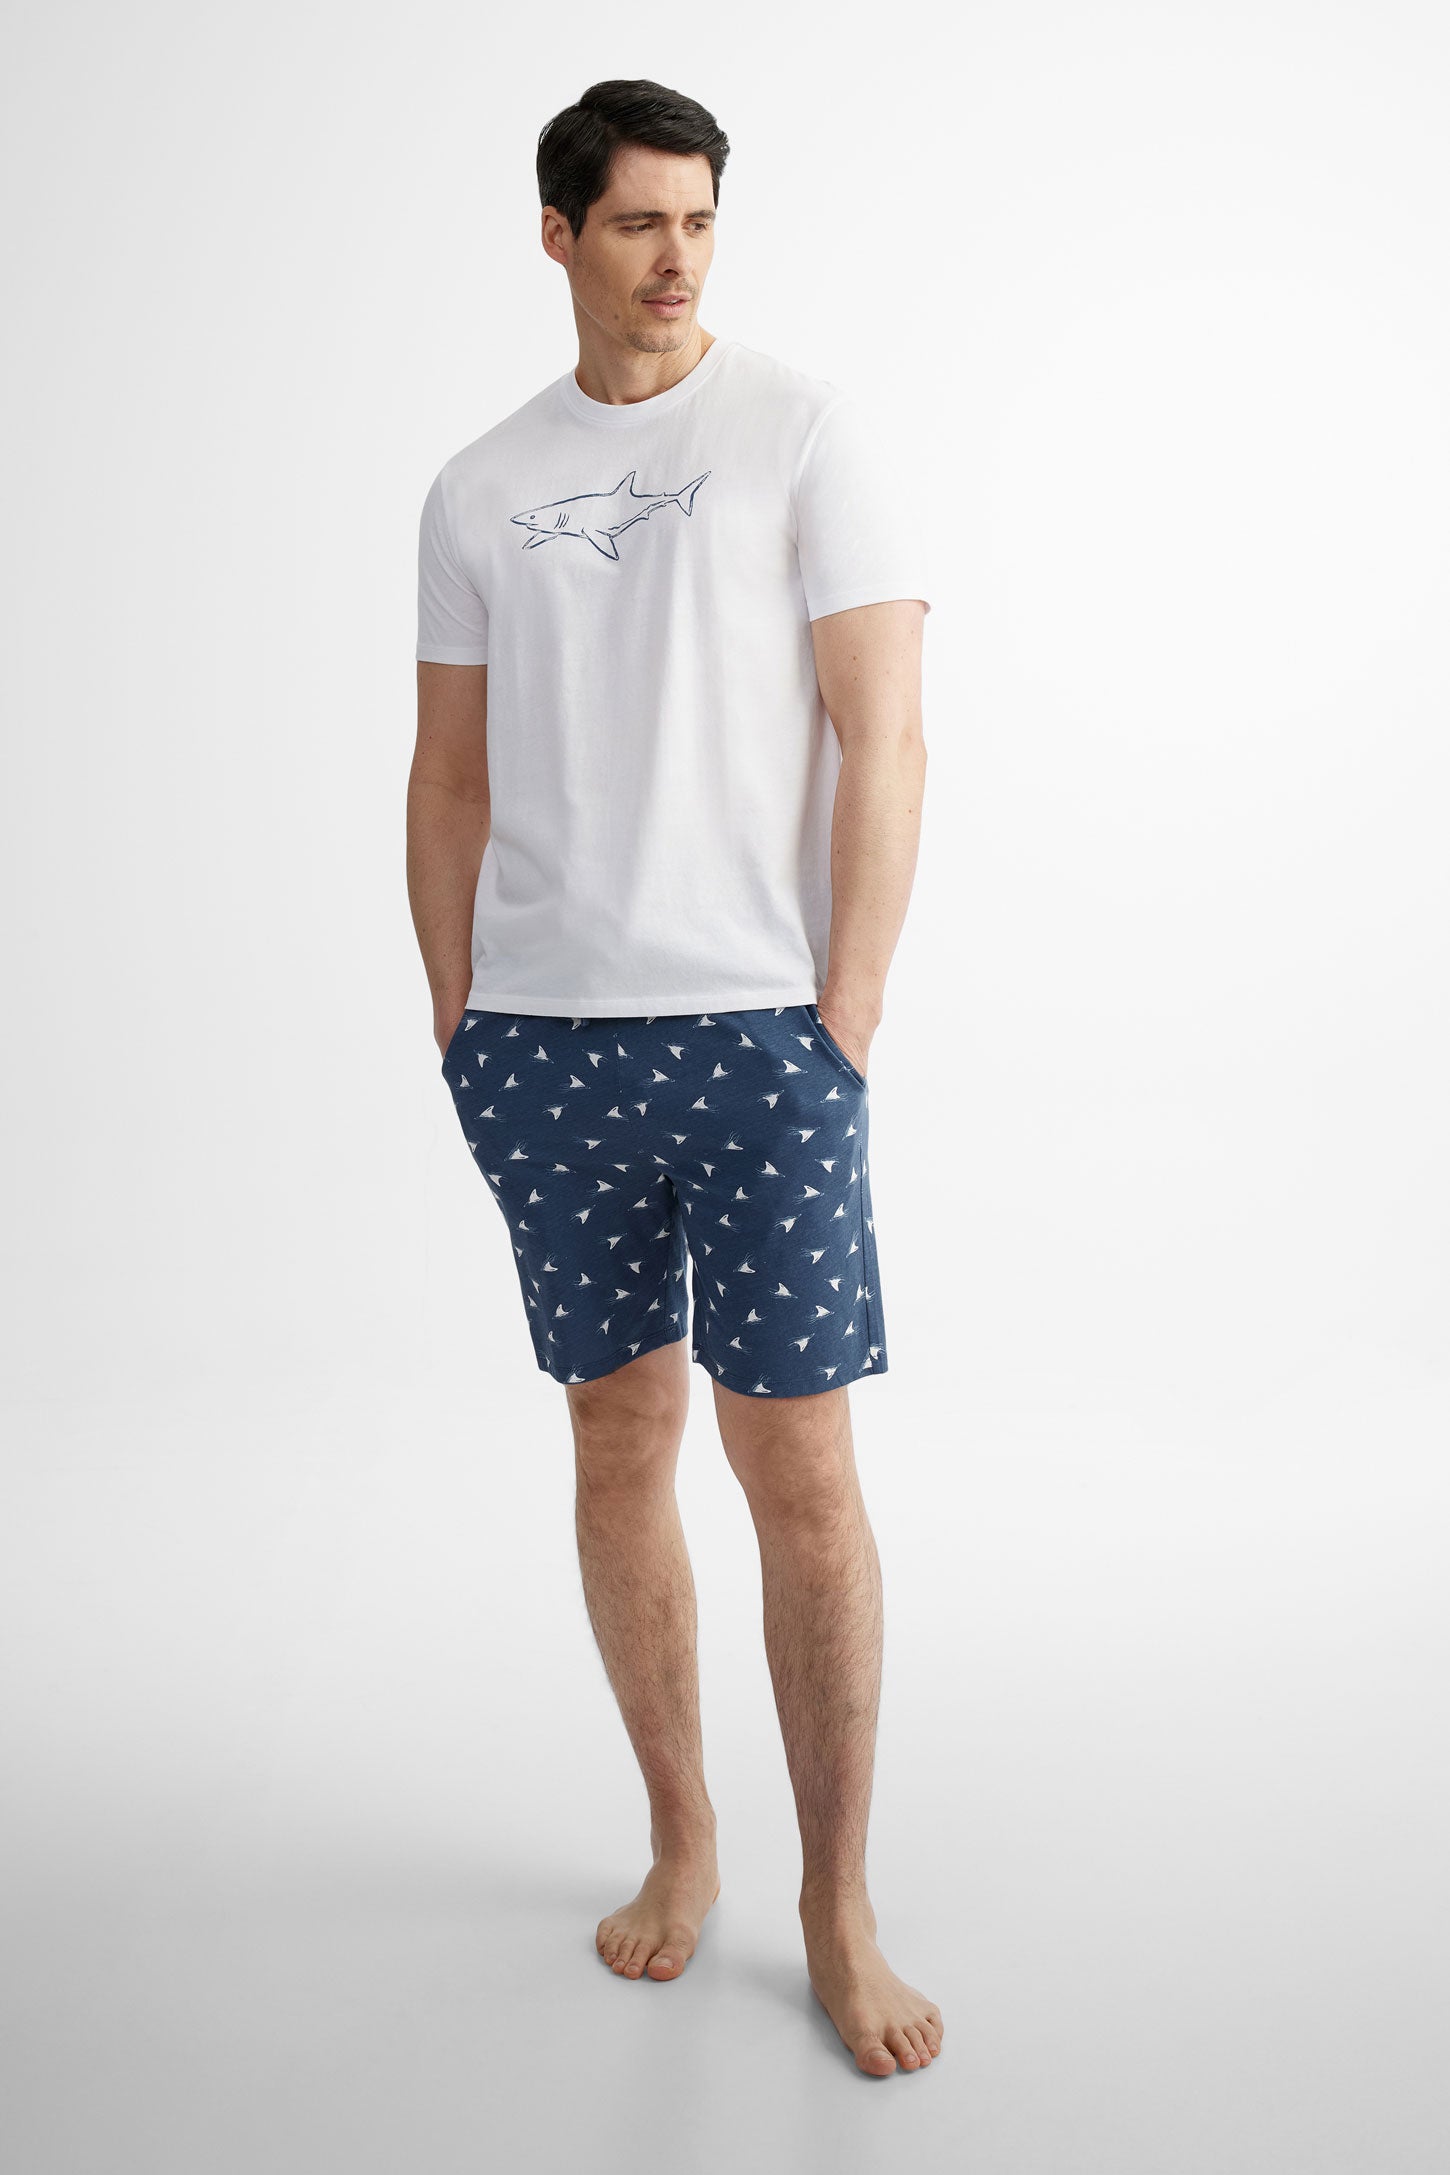 T-shirt pyjama en coton, 2/40$ - Homme && BLANC